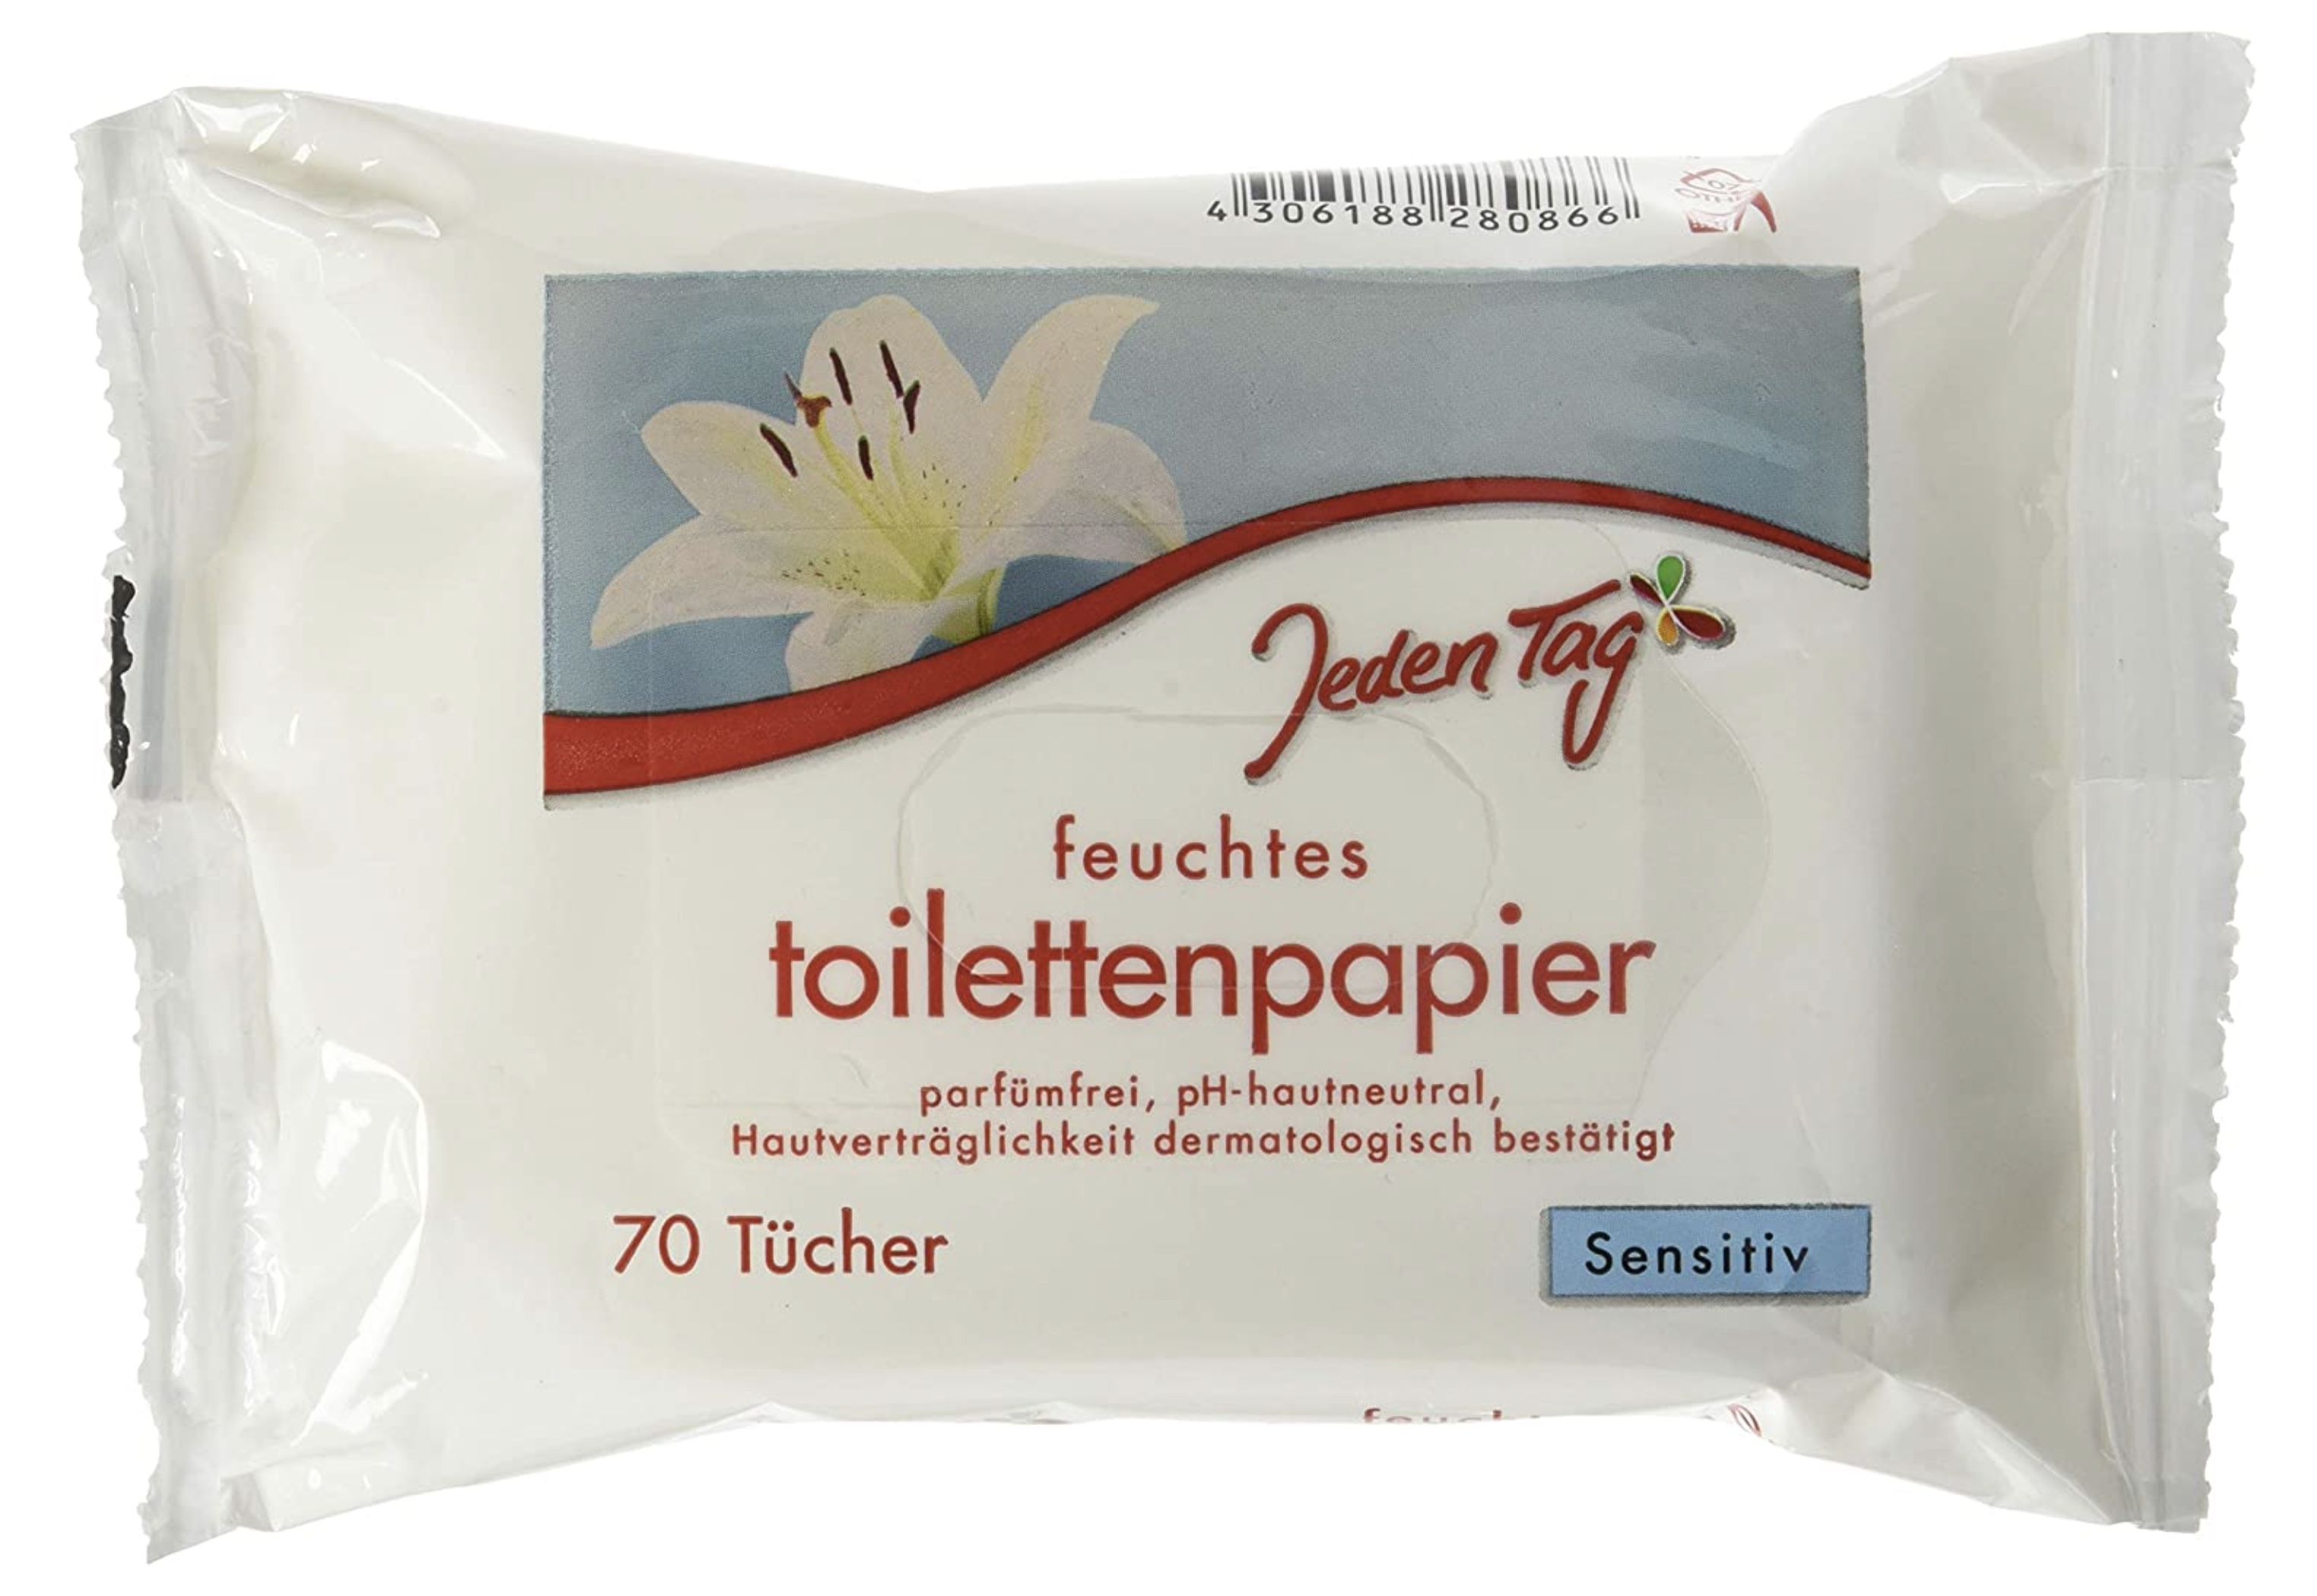 4x 70er Pack Jeden Tag feuchtes Toilettenpapier sensitiv für 2,47€   Prime Sparabo